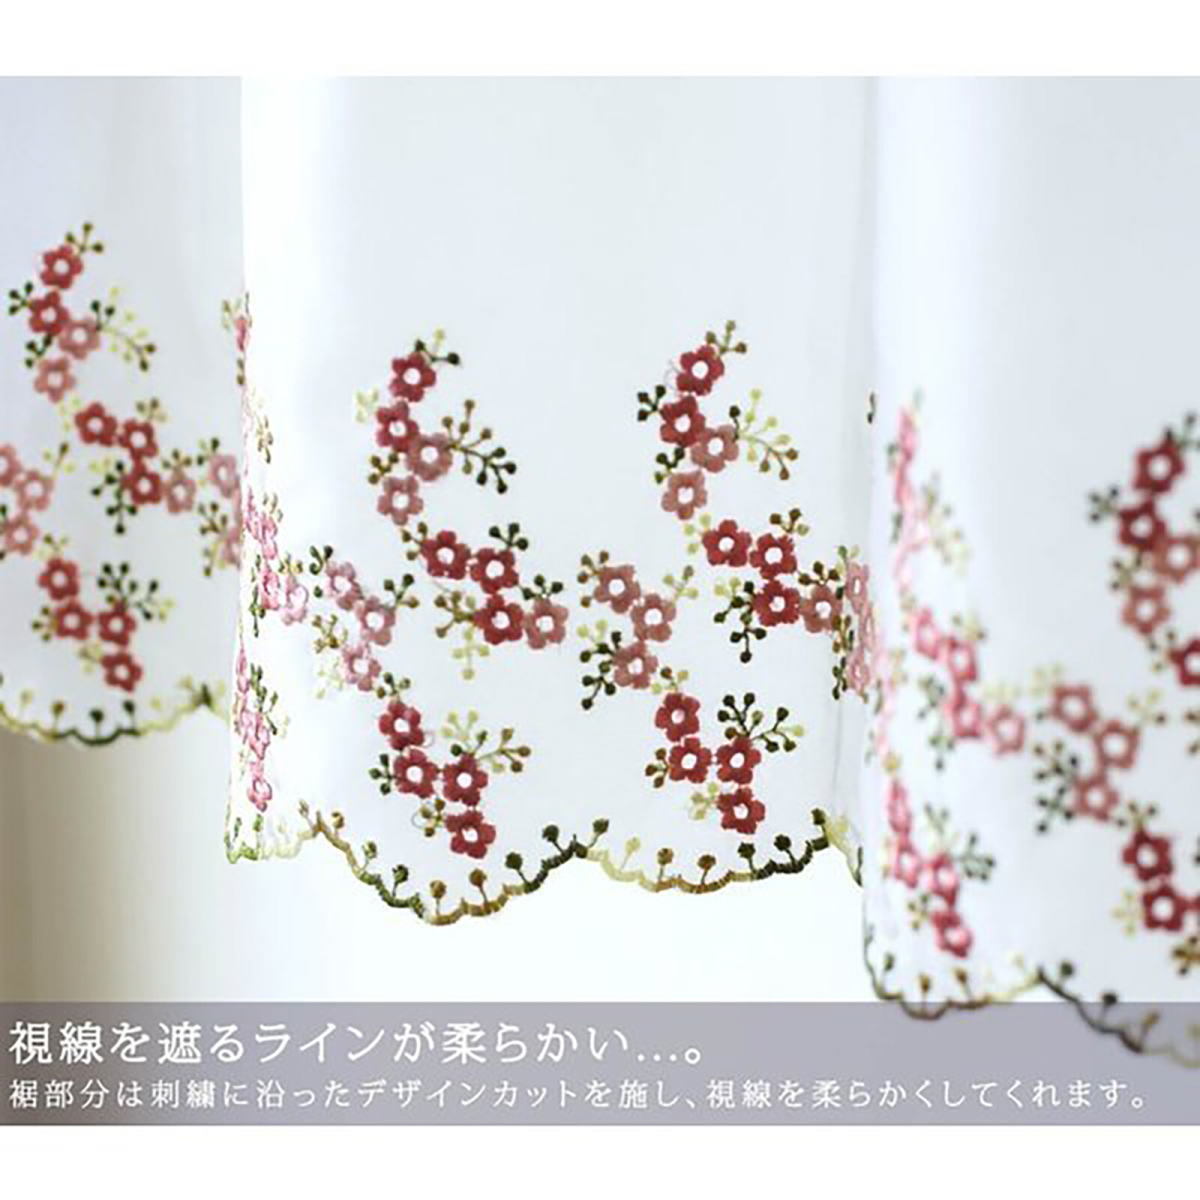  вышивка ввод короткие занавески ширина 150 x длина 45cm цветок маленький для окна FBK-0039 "теплый" белый 